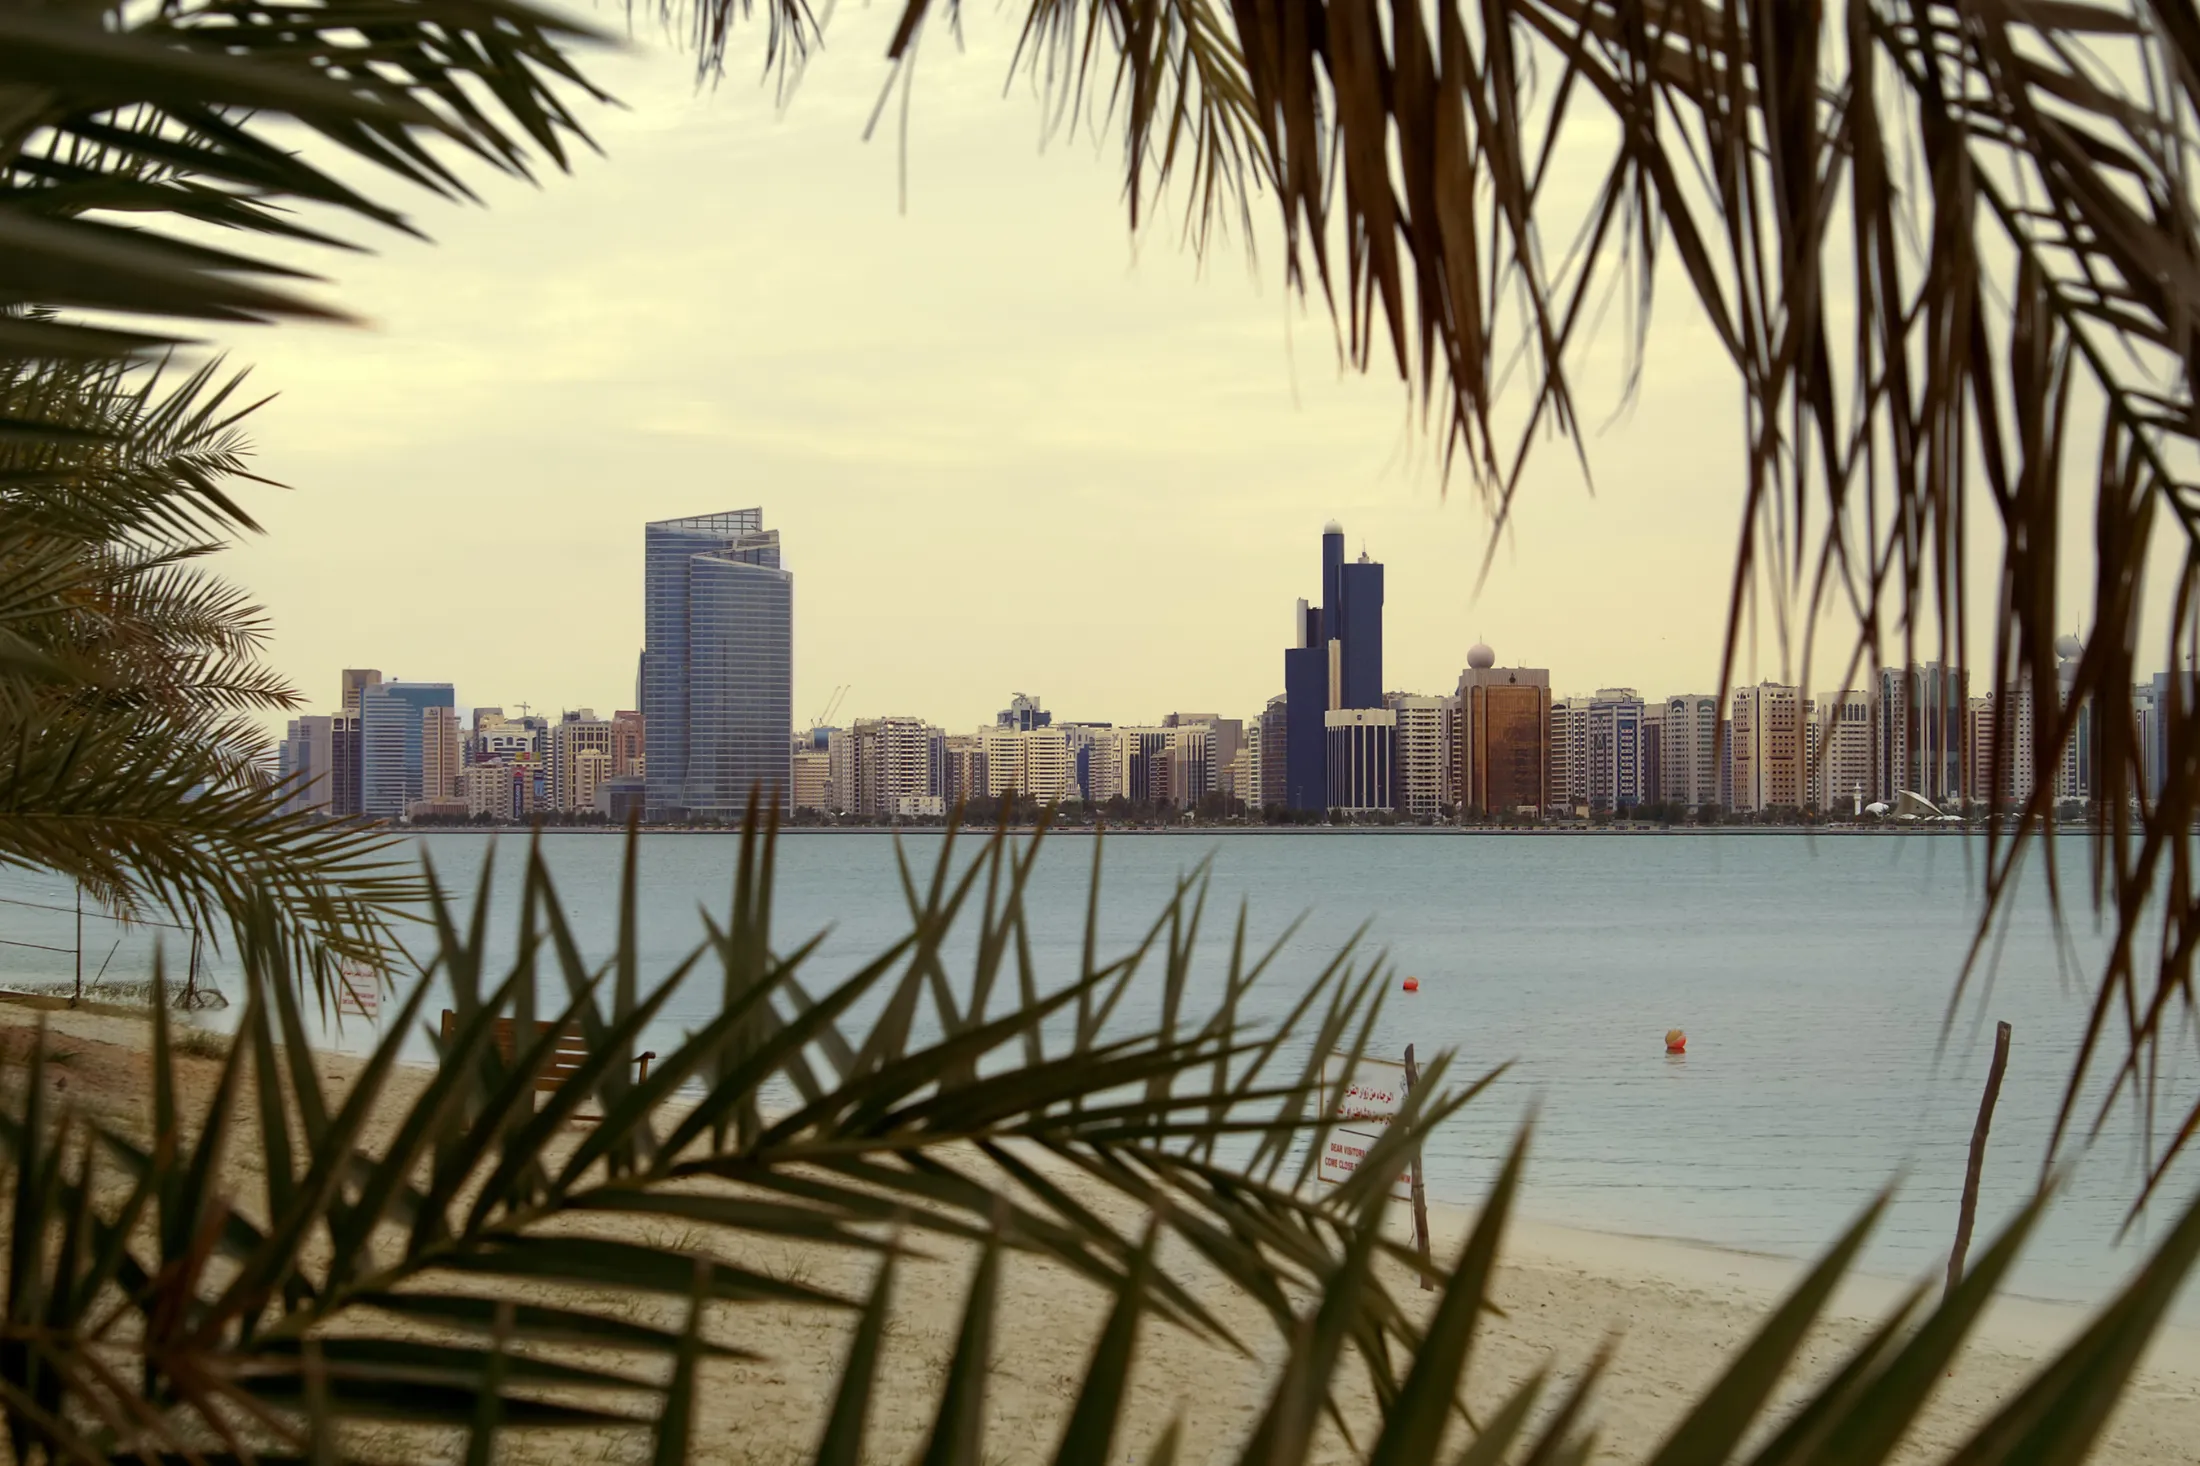 A beach seen through palm leaves in Abu Dhabi.